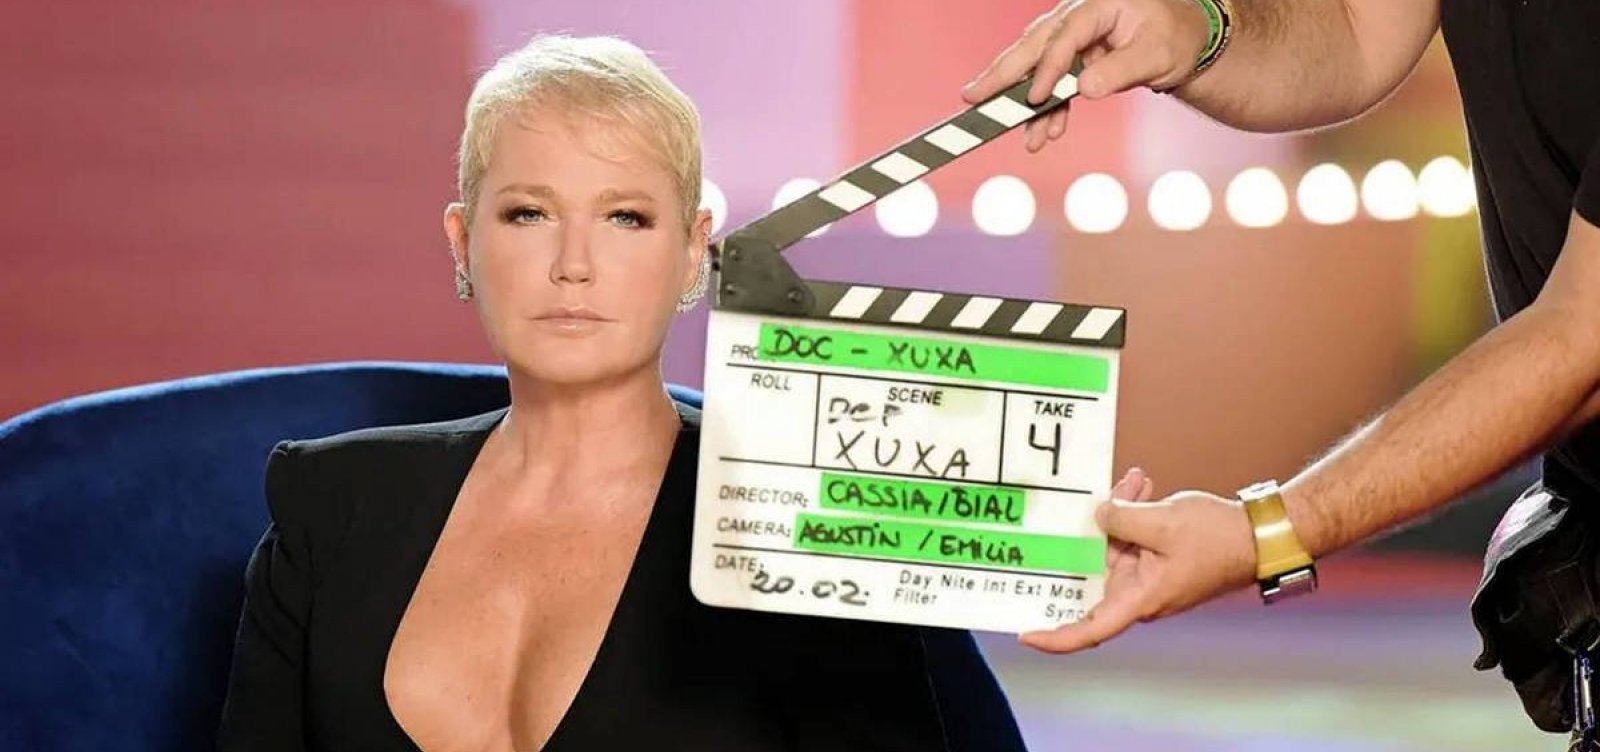 Fotógrafo processa Xuxa, Globo e Endemol por uso indevido de imagens em série sobre a apresentadora